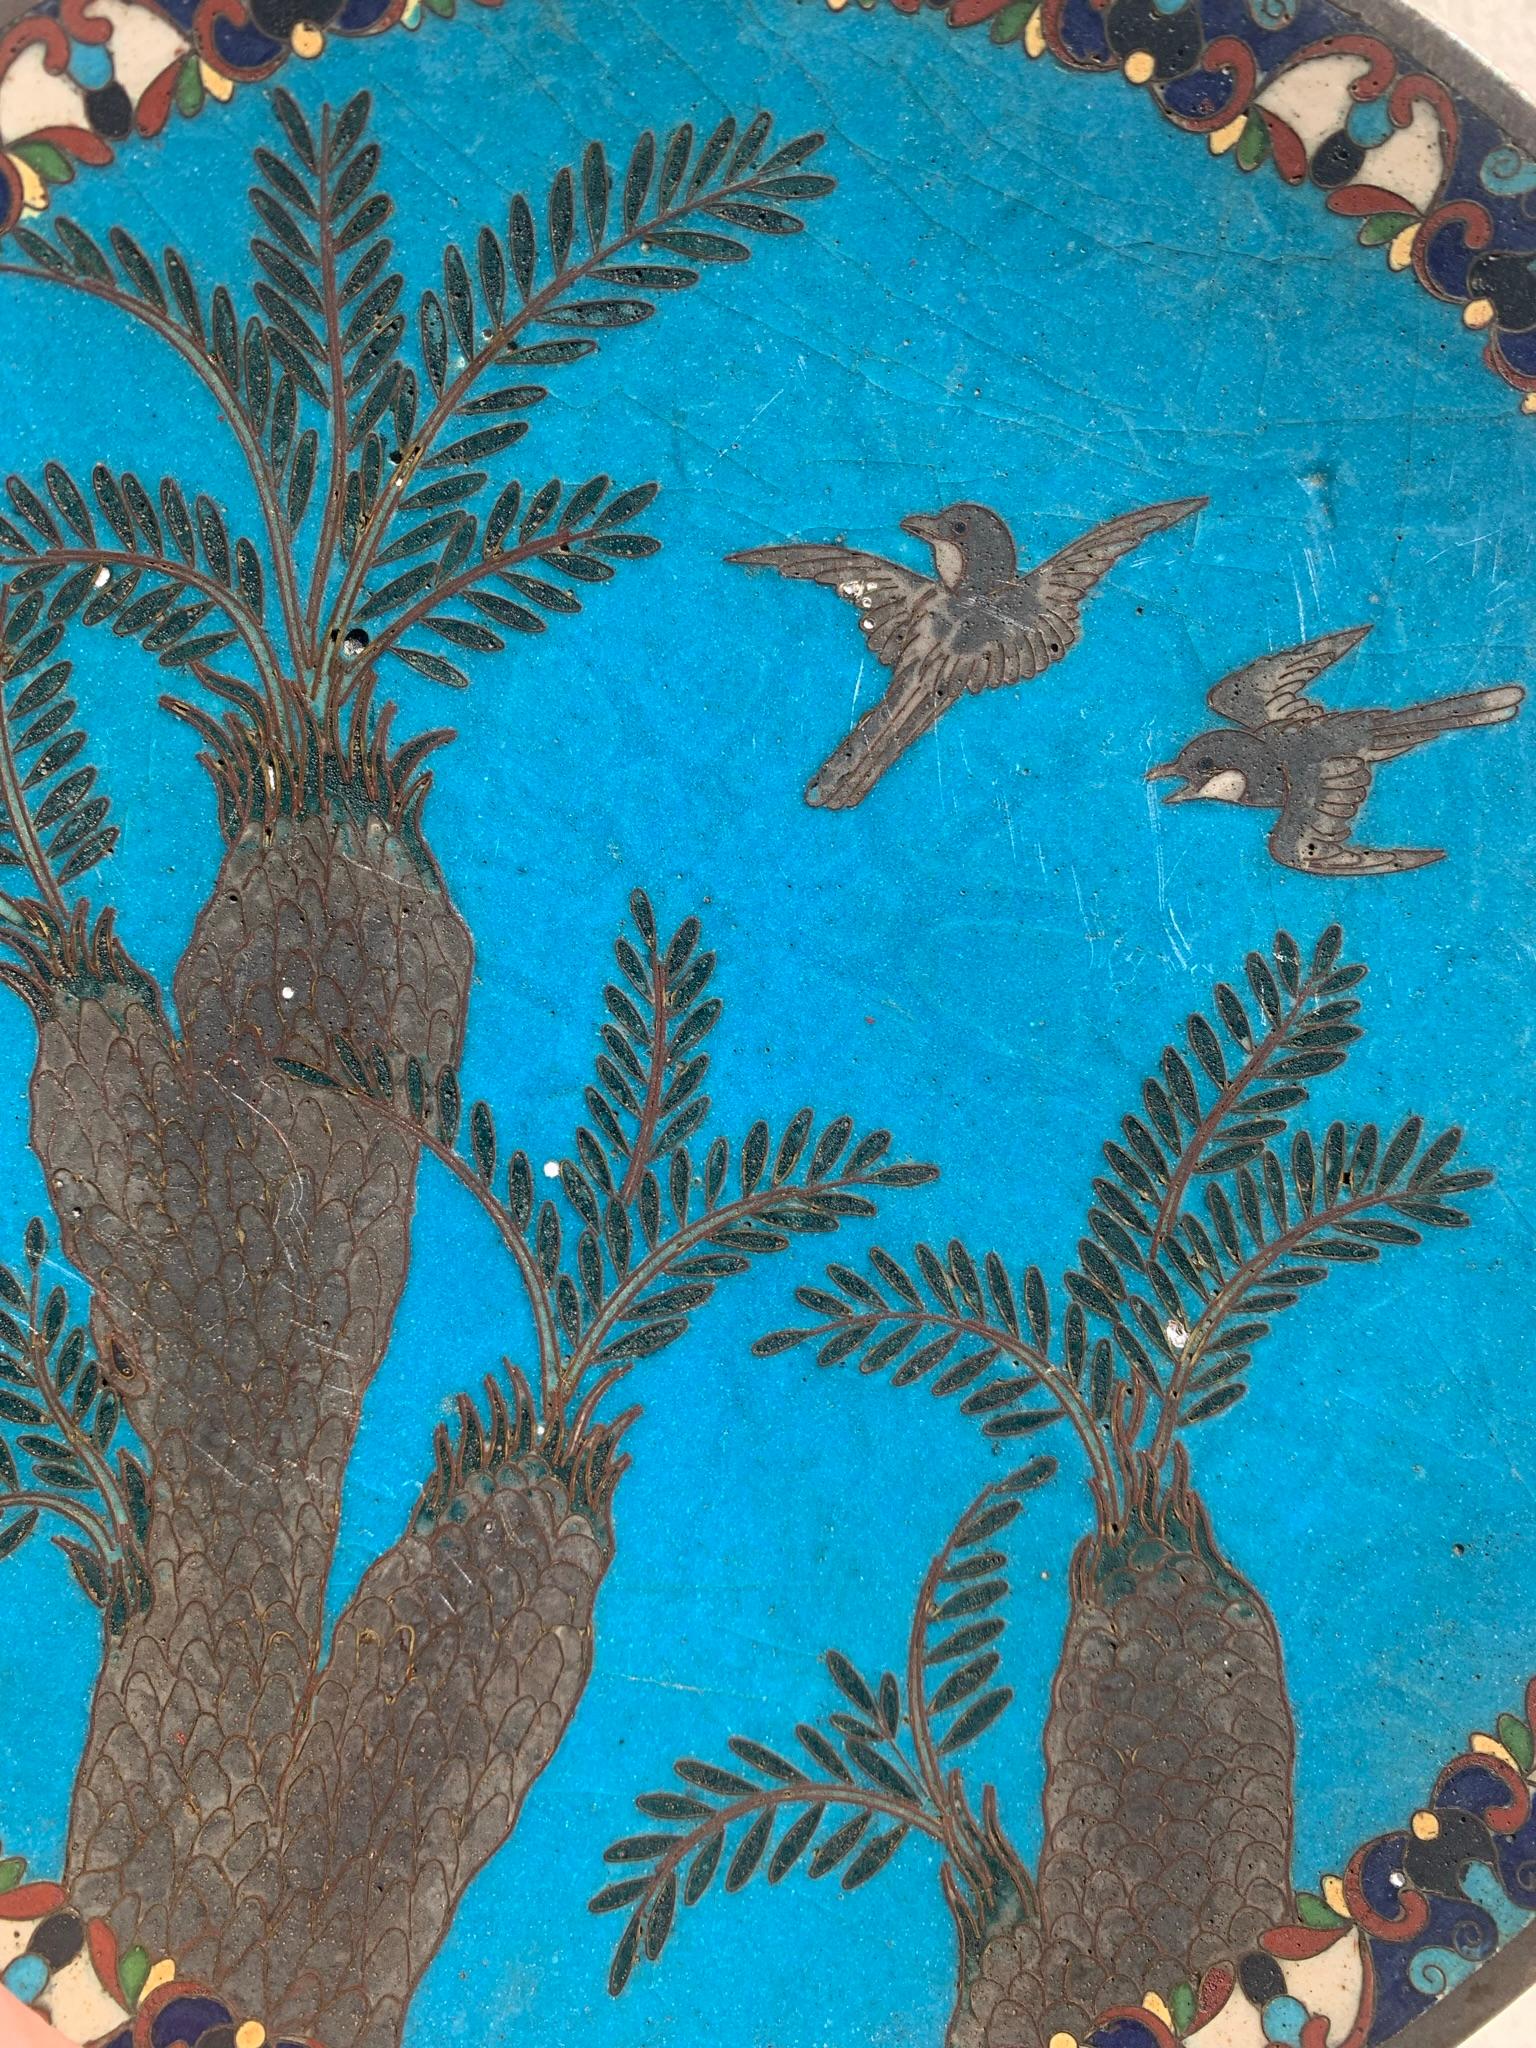 Antique Arabian Hand-Painted Metal Cloisonné Plate 5